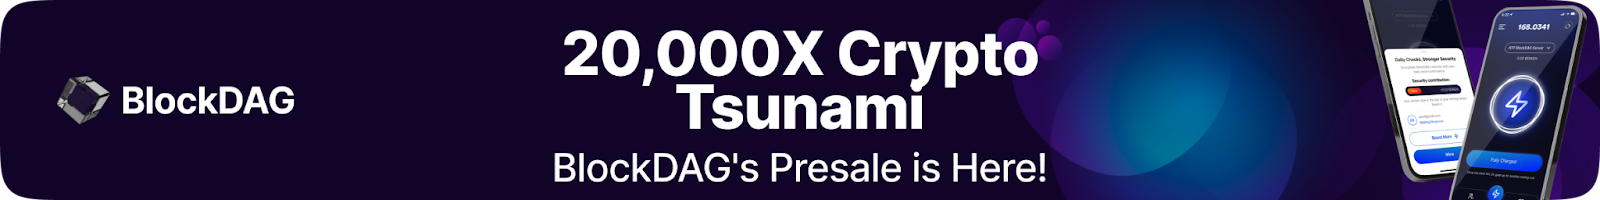 20,000X Crypto Tsunami BlockDAG's Presale is Here